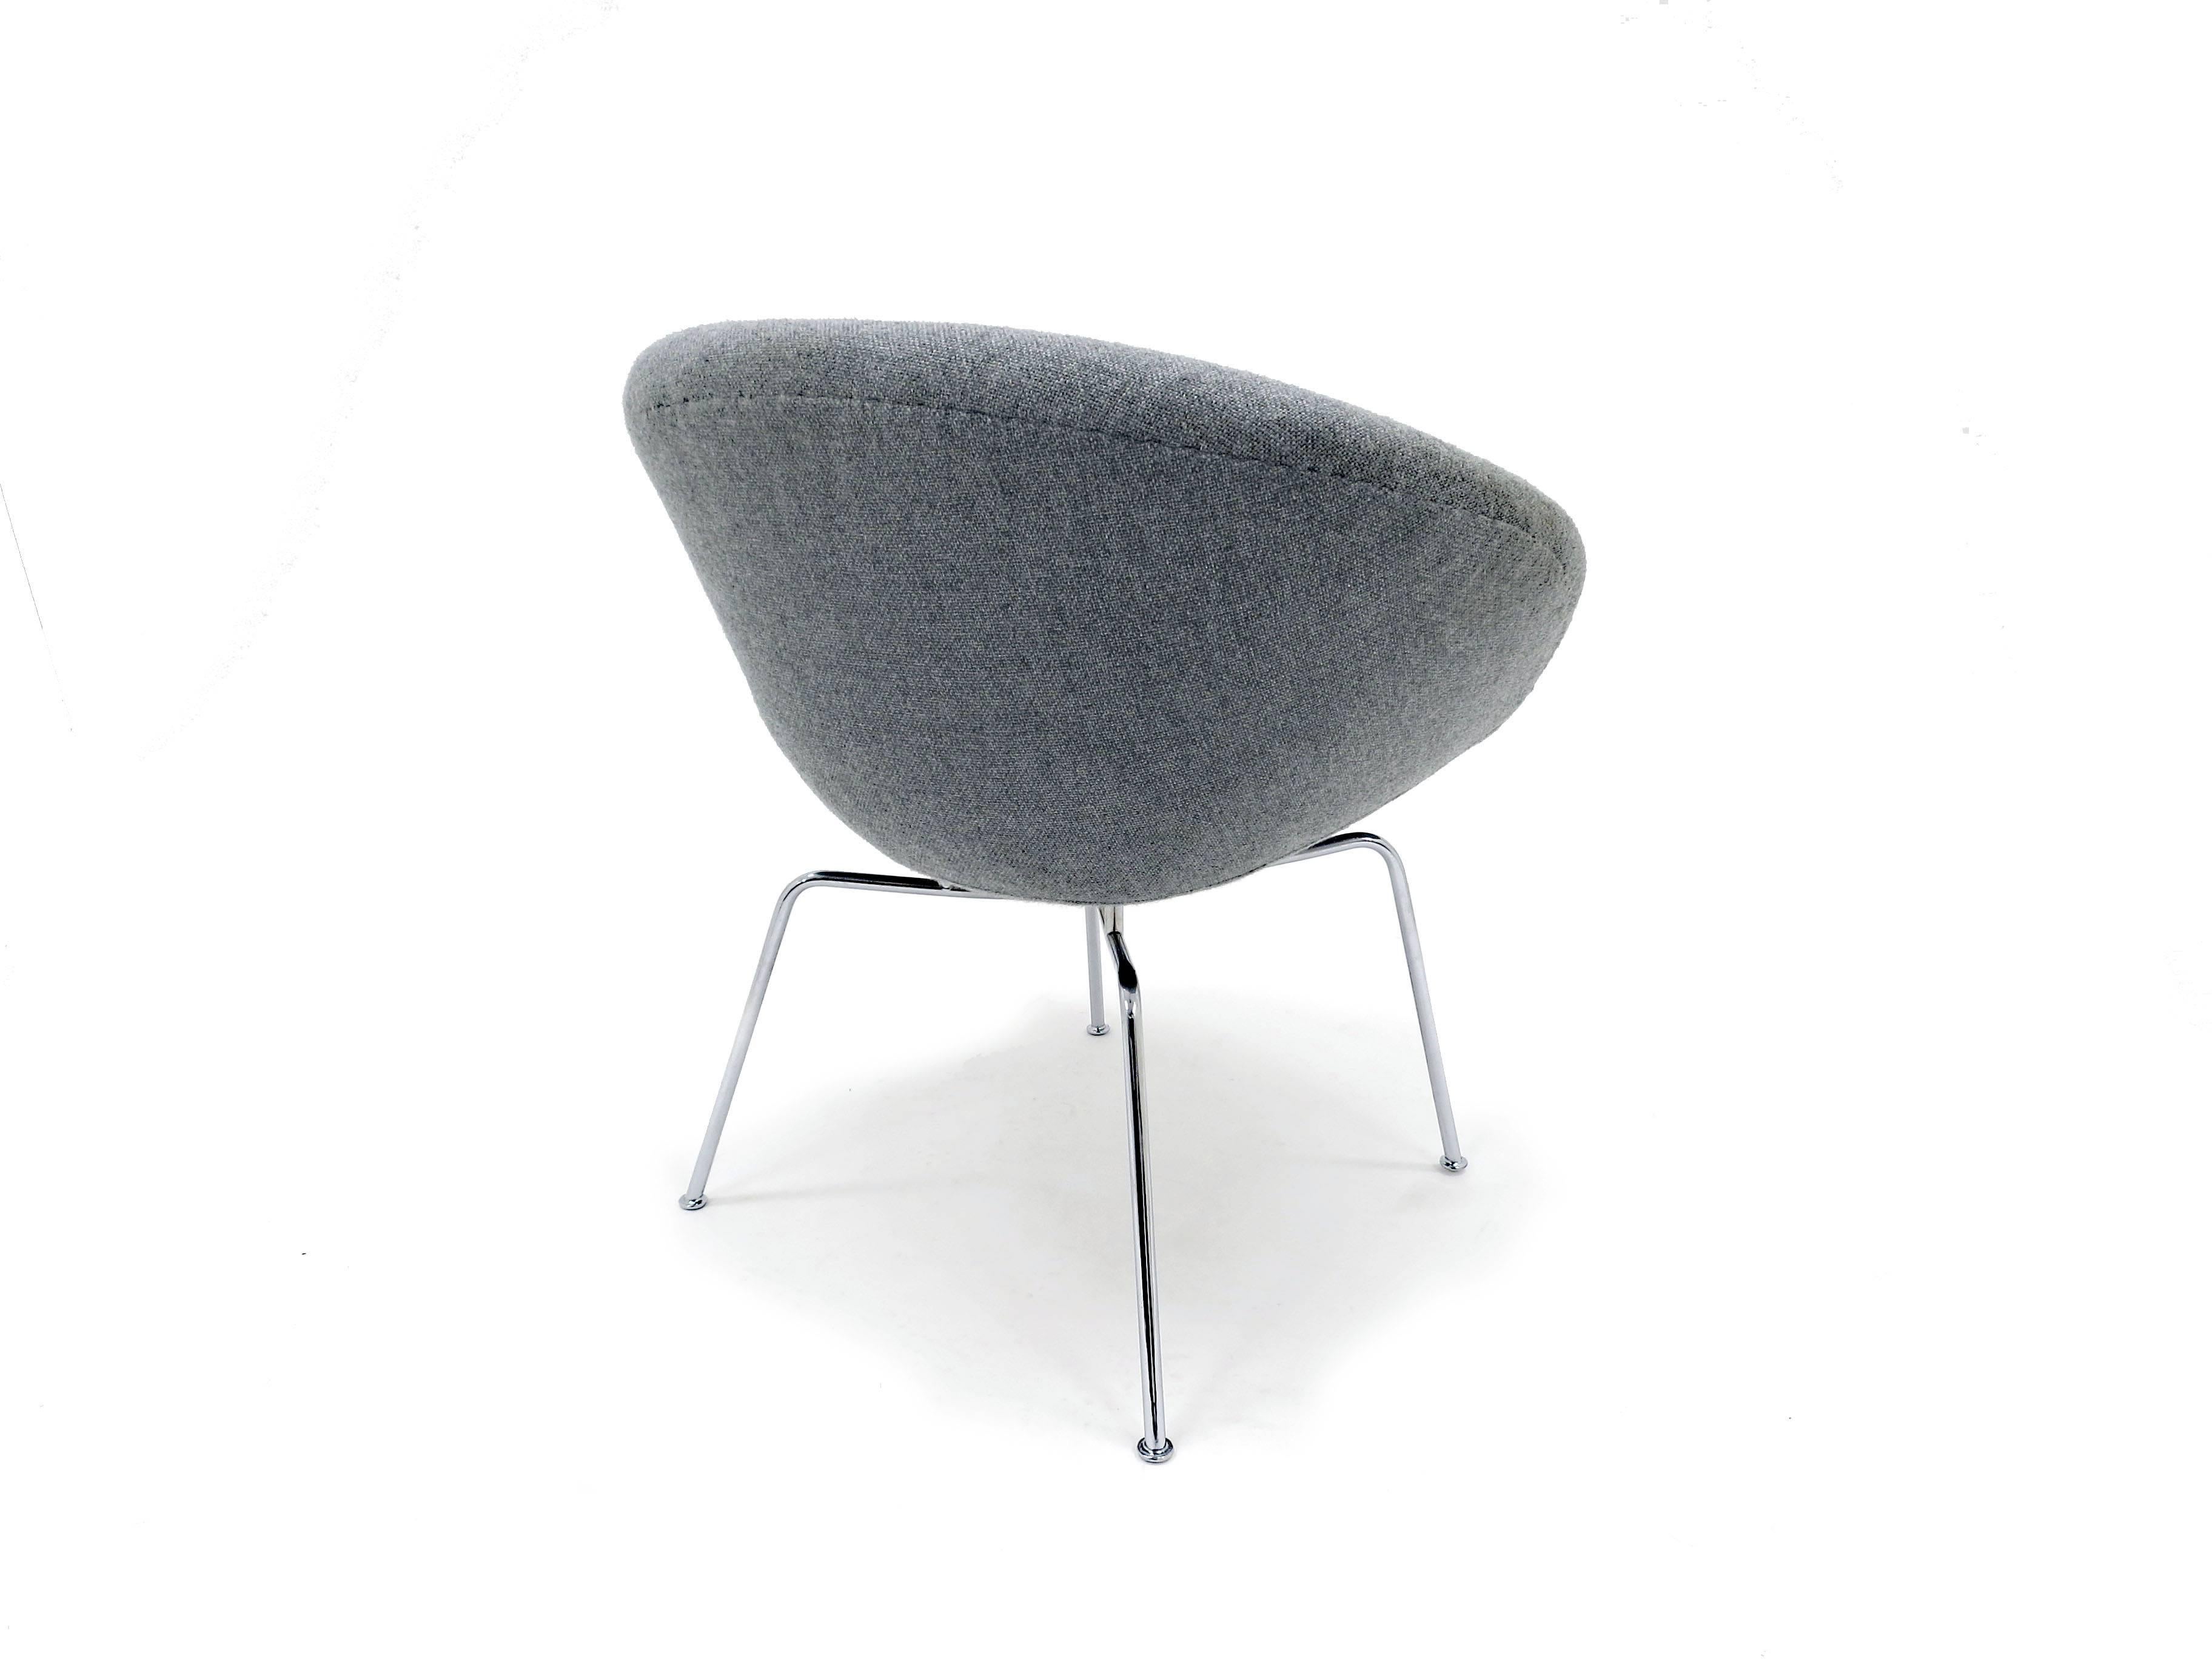 20th Century Arne Jacobsen Pot Chair for Fritz Hansen, Danish, 1950s For Sale